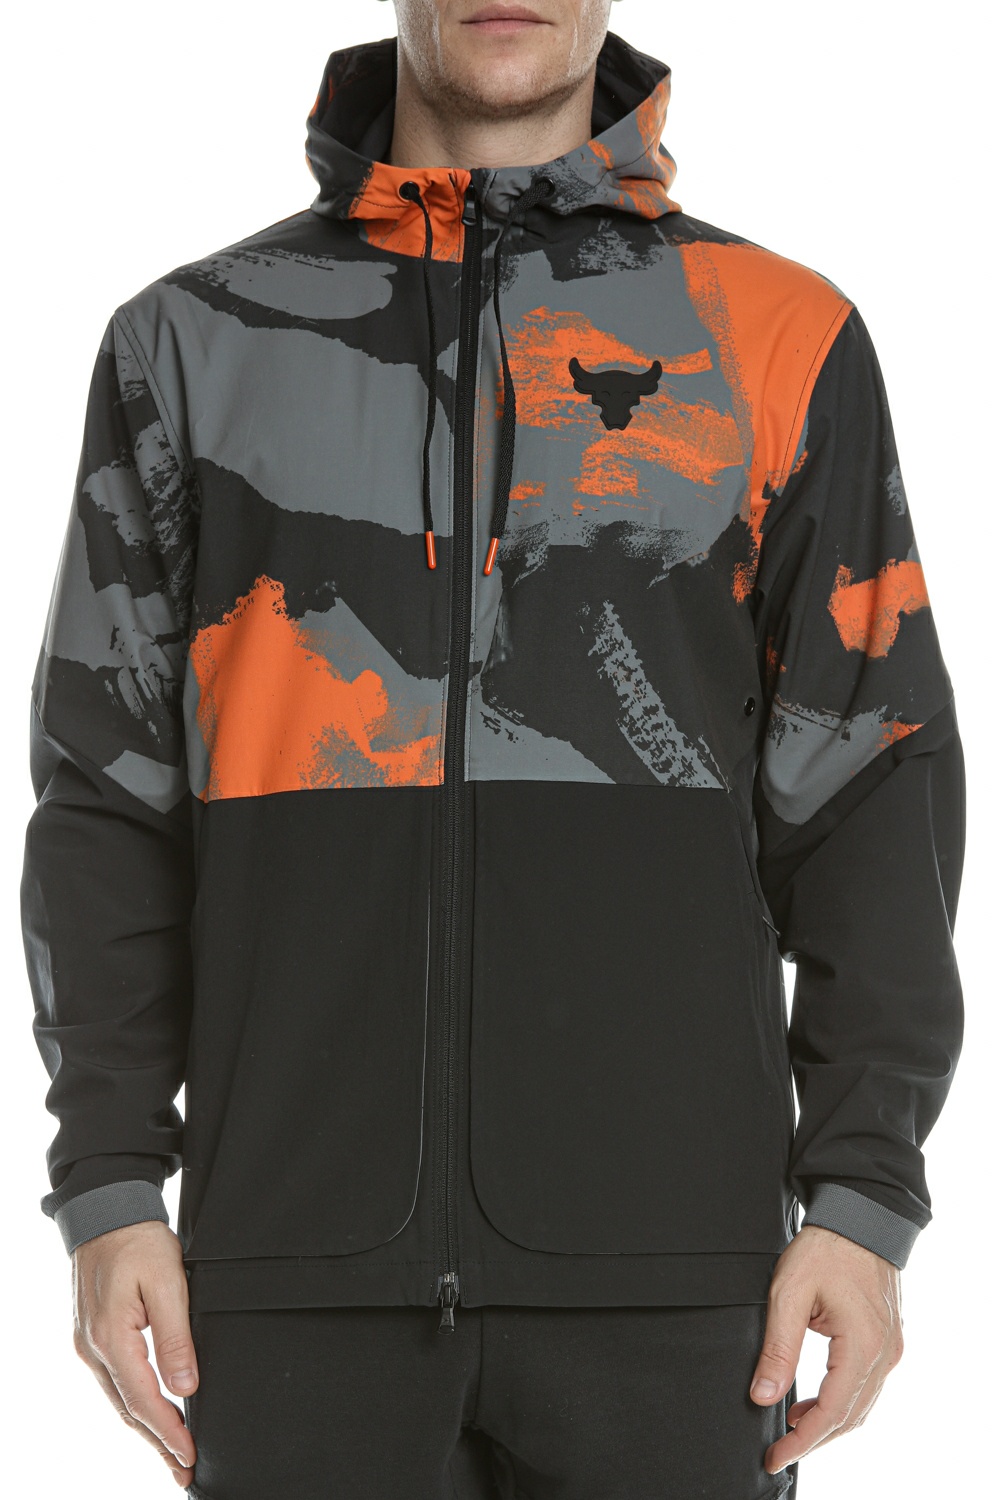 Ανδρικά/Ρούχα/Πανωφόρια/Τζάκετς UNDER ARMOUR - Ανδρικό jacket UNDER ARMOUR Pjt Rock Legacy Wndbrkr μαύρο πορτοκαλί